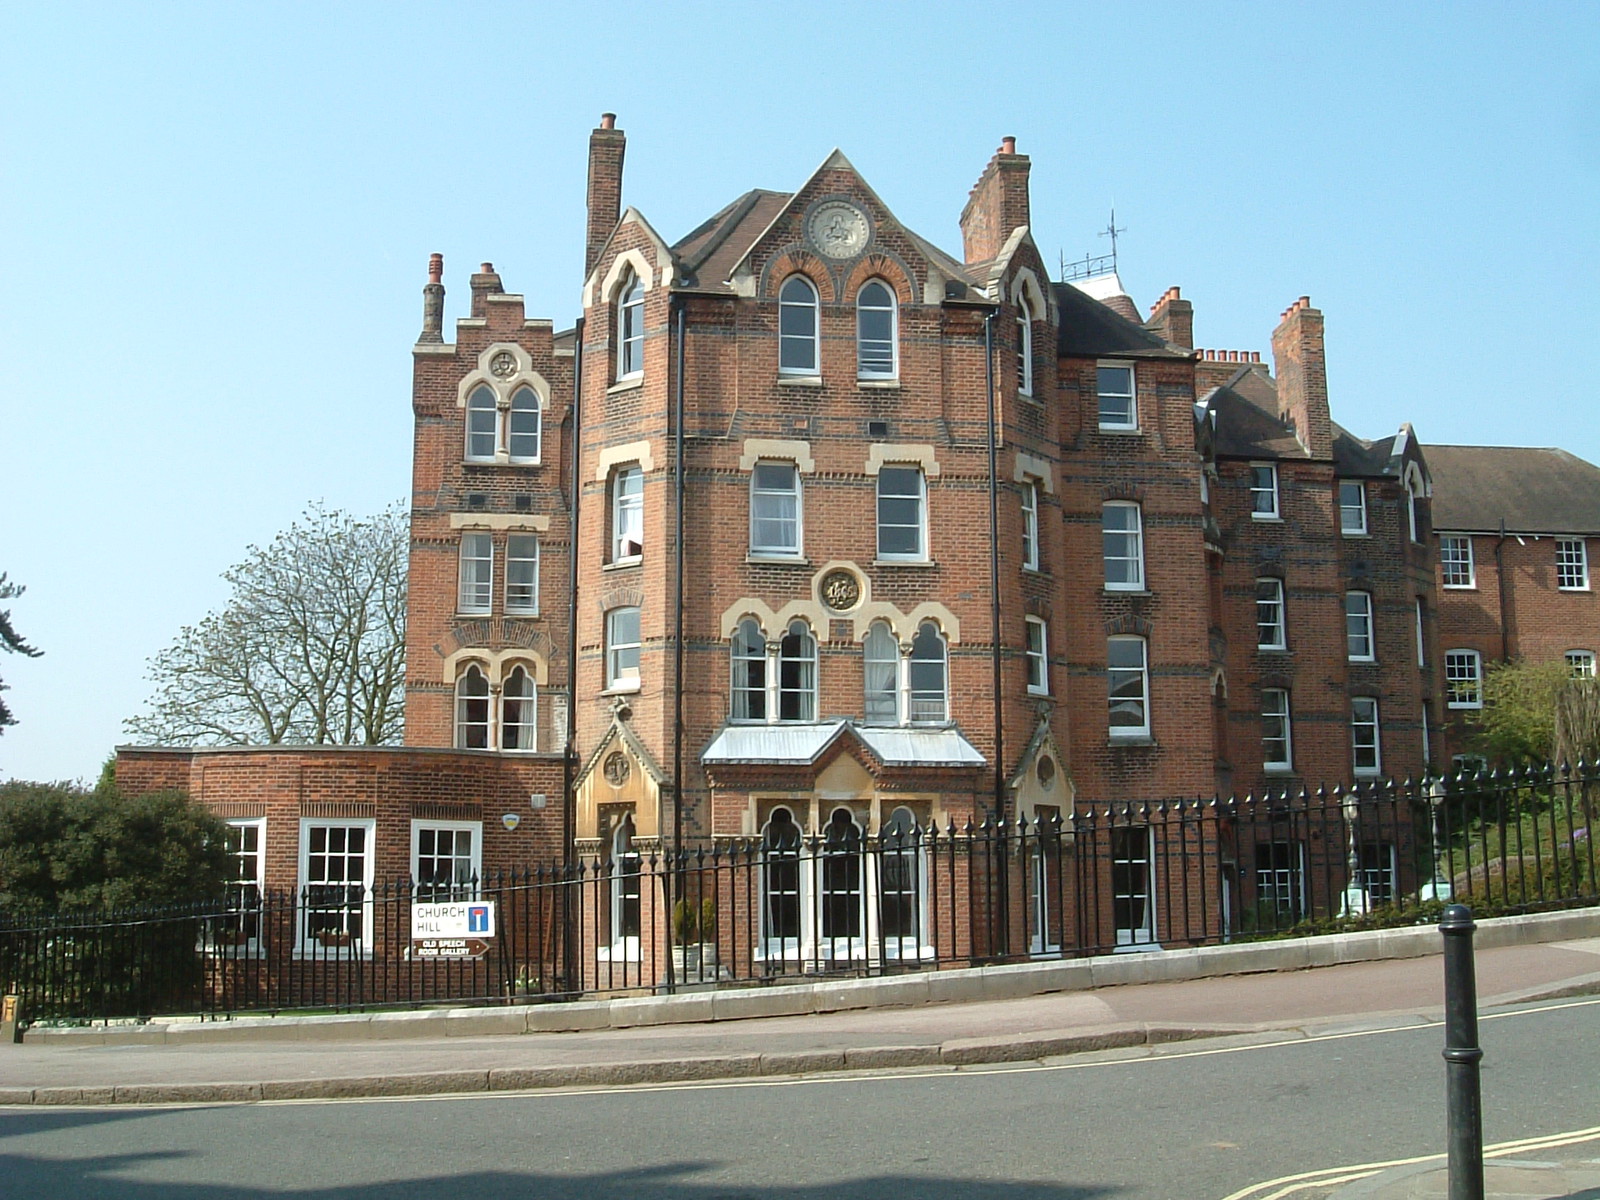 A school building, Harrow